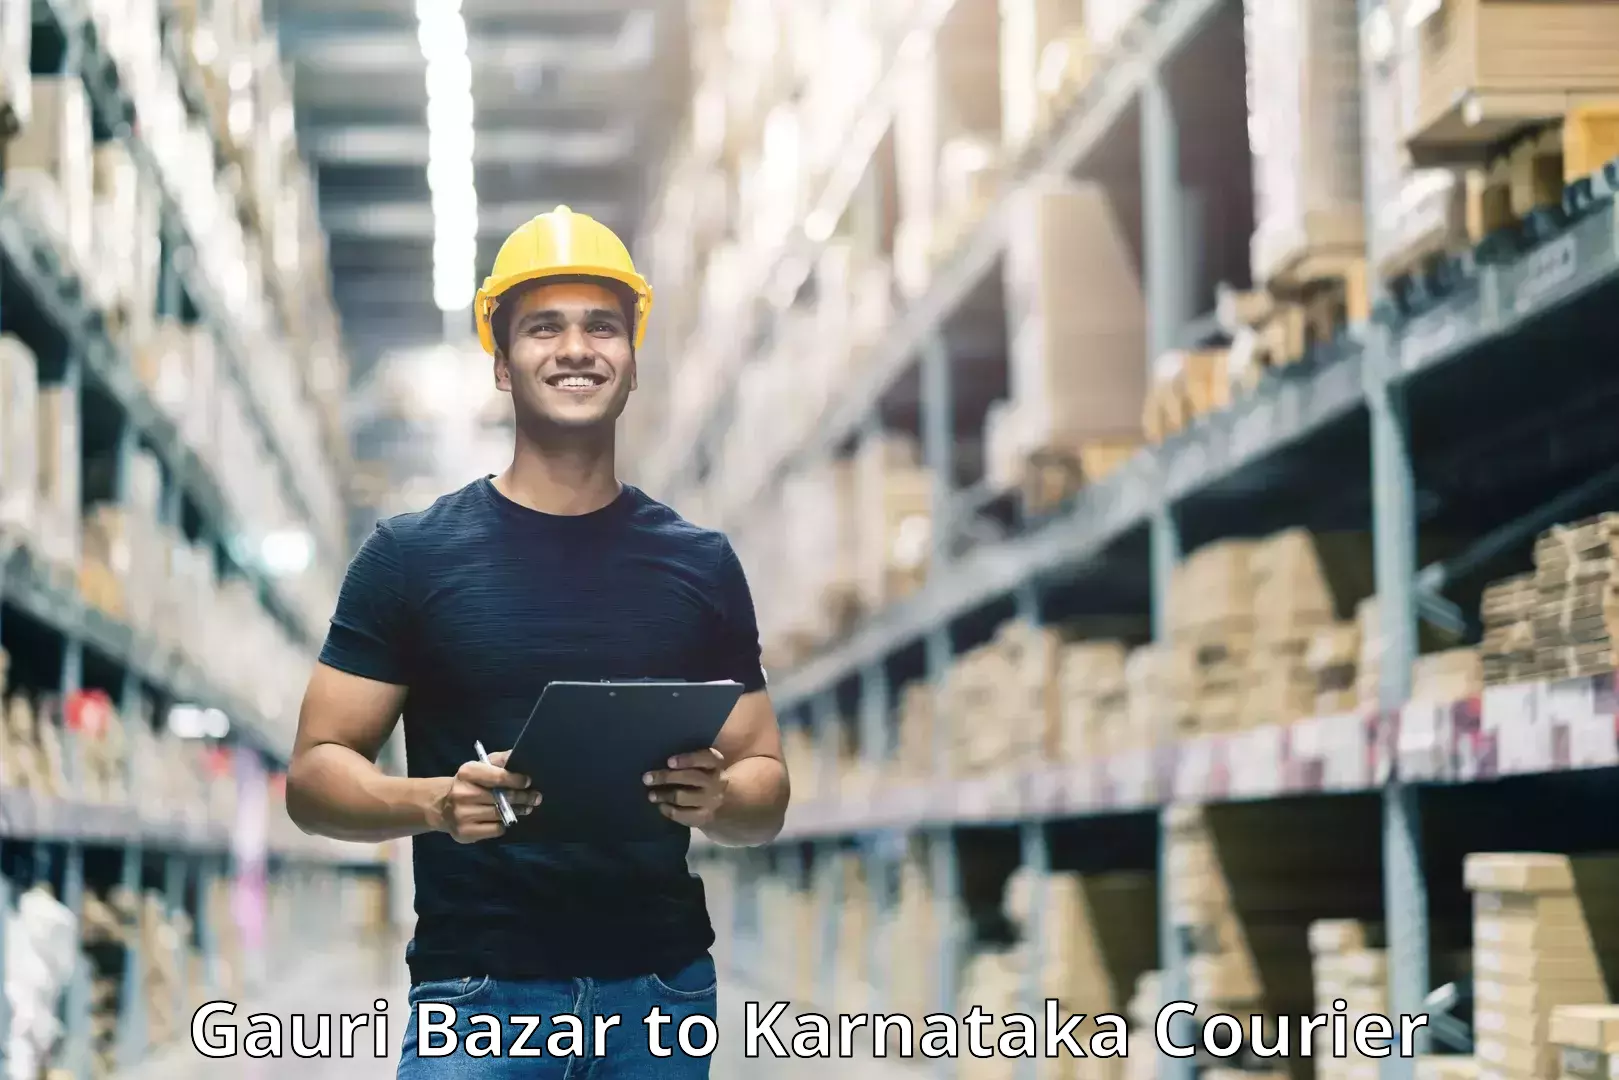 Customer-friendly courier services Gauri Bazar to Chikkamagaluru